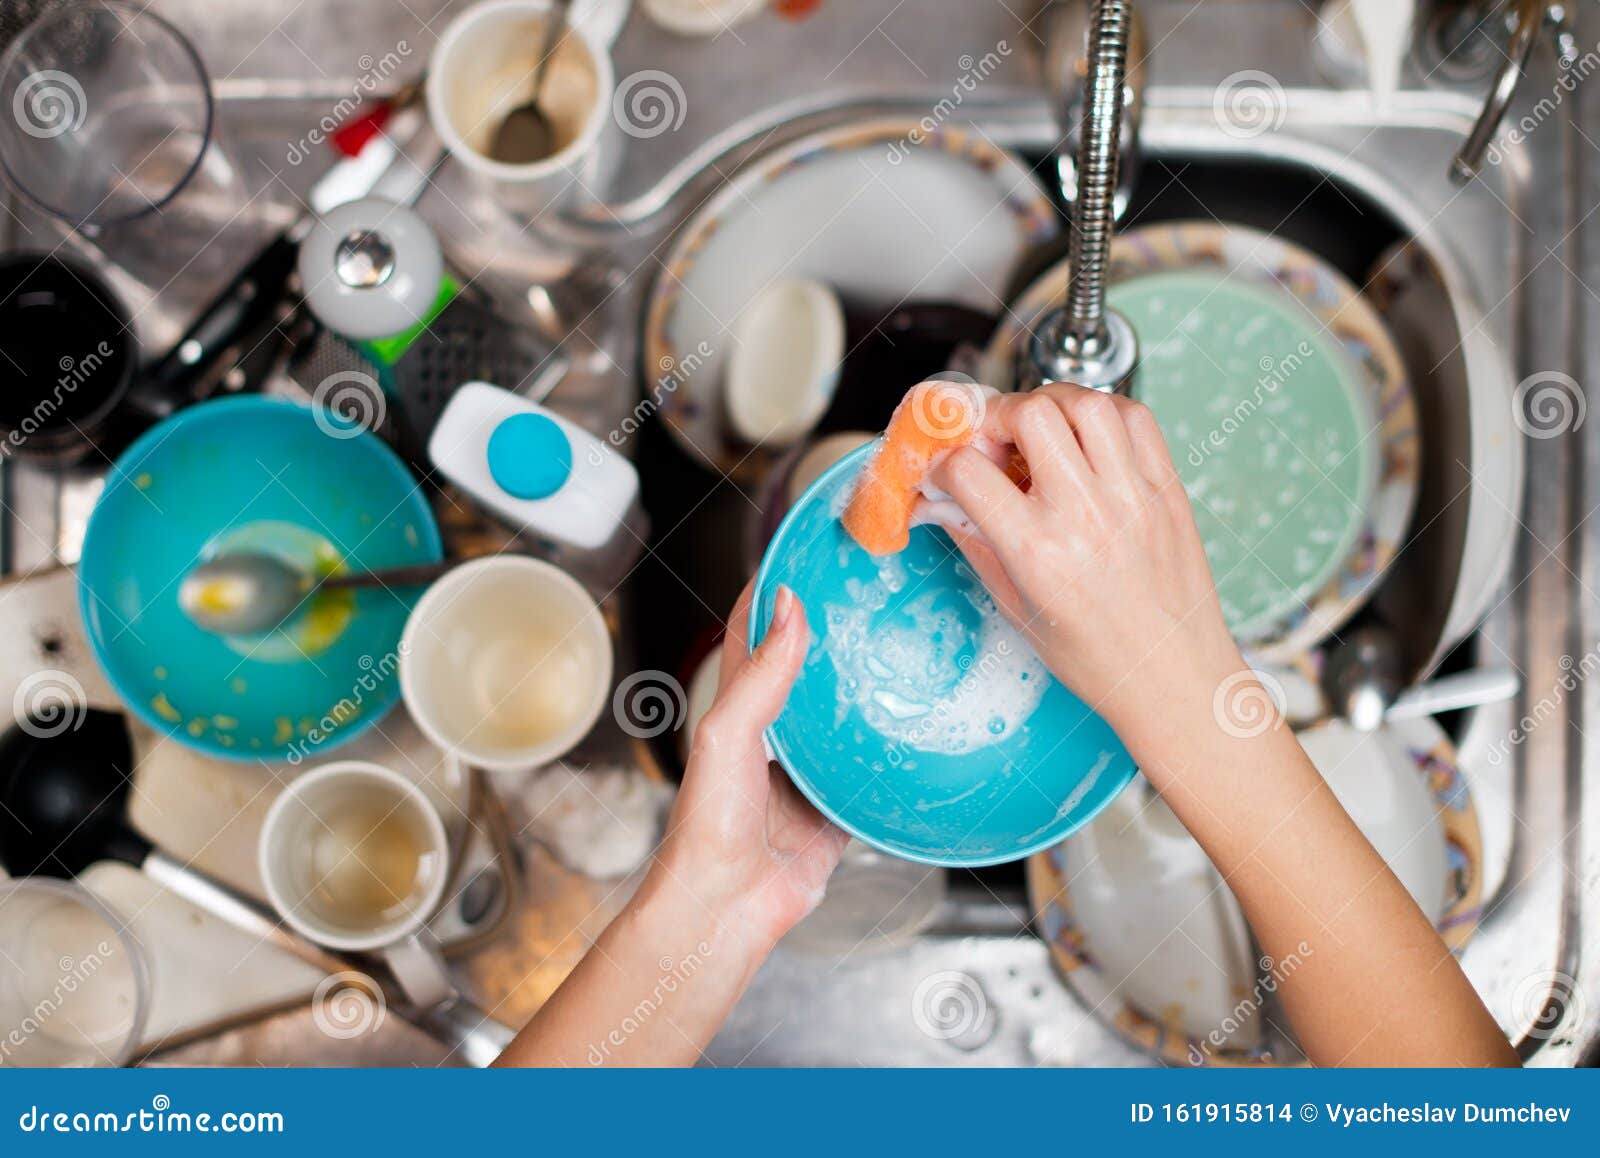 Много мытой посуды. Мытье посуды. Грязная посуда. Мытье грязной посуды. Грязная посуда в раковине.